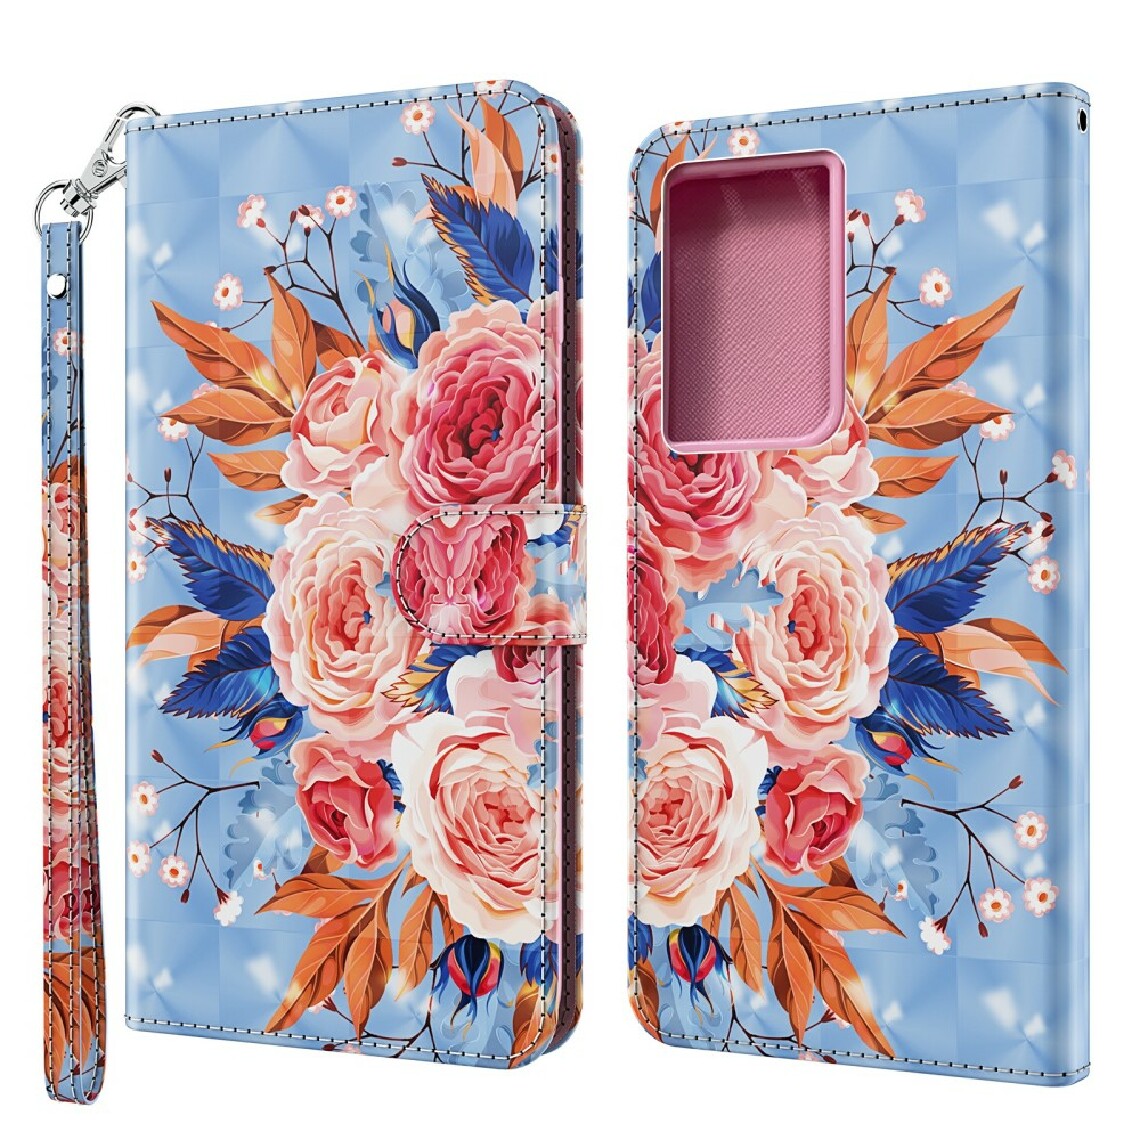 Other - Etui en PU impression de motifs fleurs en floraison pour votre Samsung Galaxy S30 Ultra - Coque, étui smartphone